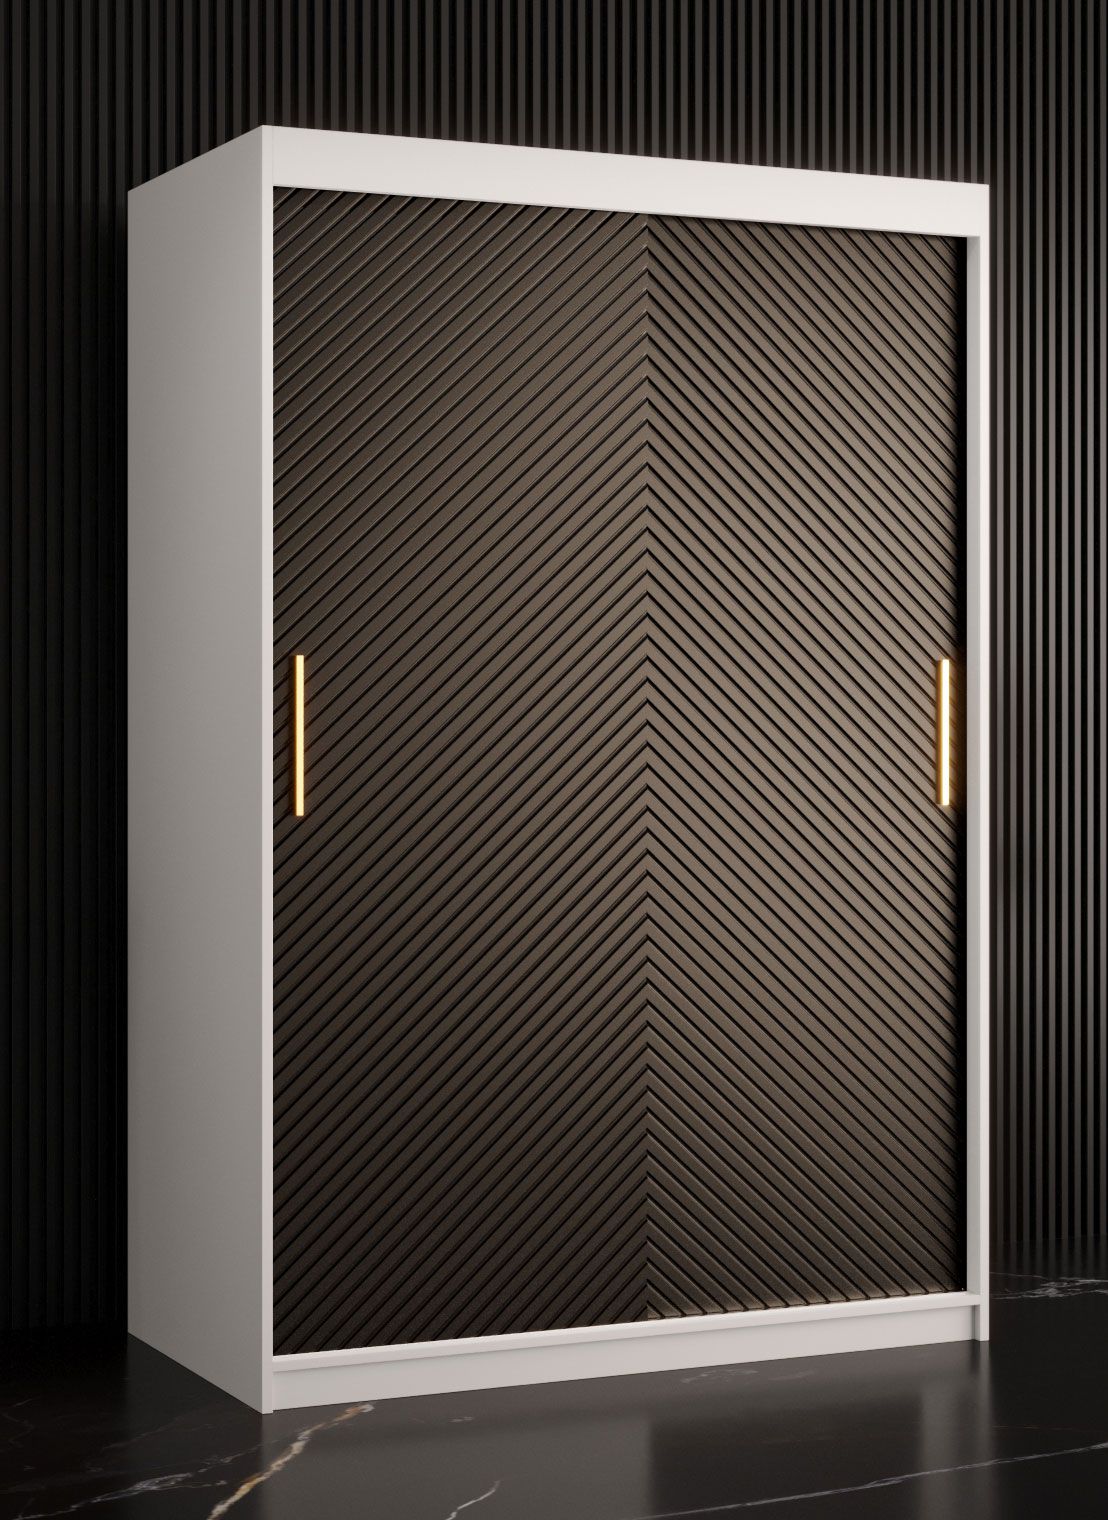 Kledingkast met strak design Balmenhorn 06, kleur: mat wit / mat zwart - afmetingen: 200 x 120 x 62 cm (H x B x D), met vijf vakken en twee kledingstangen